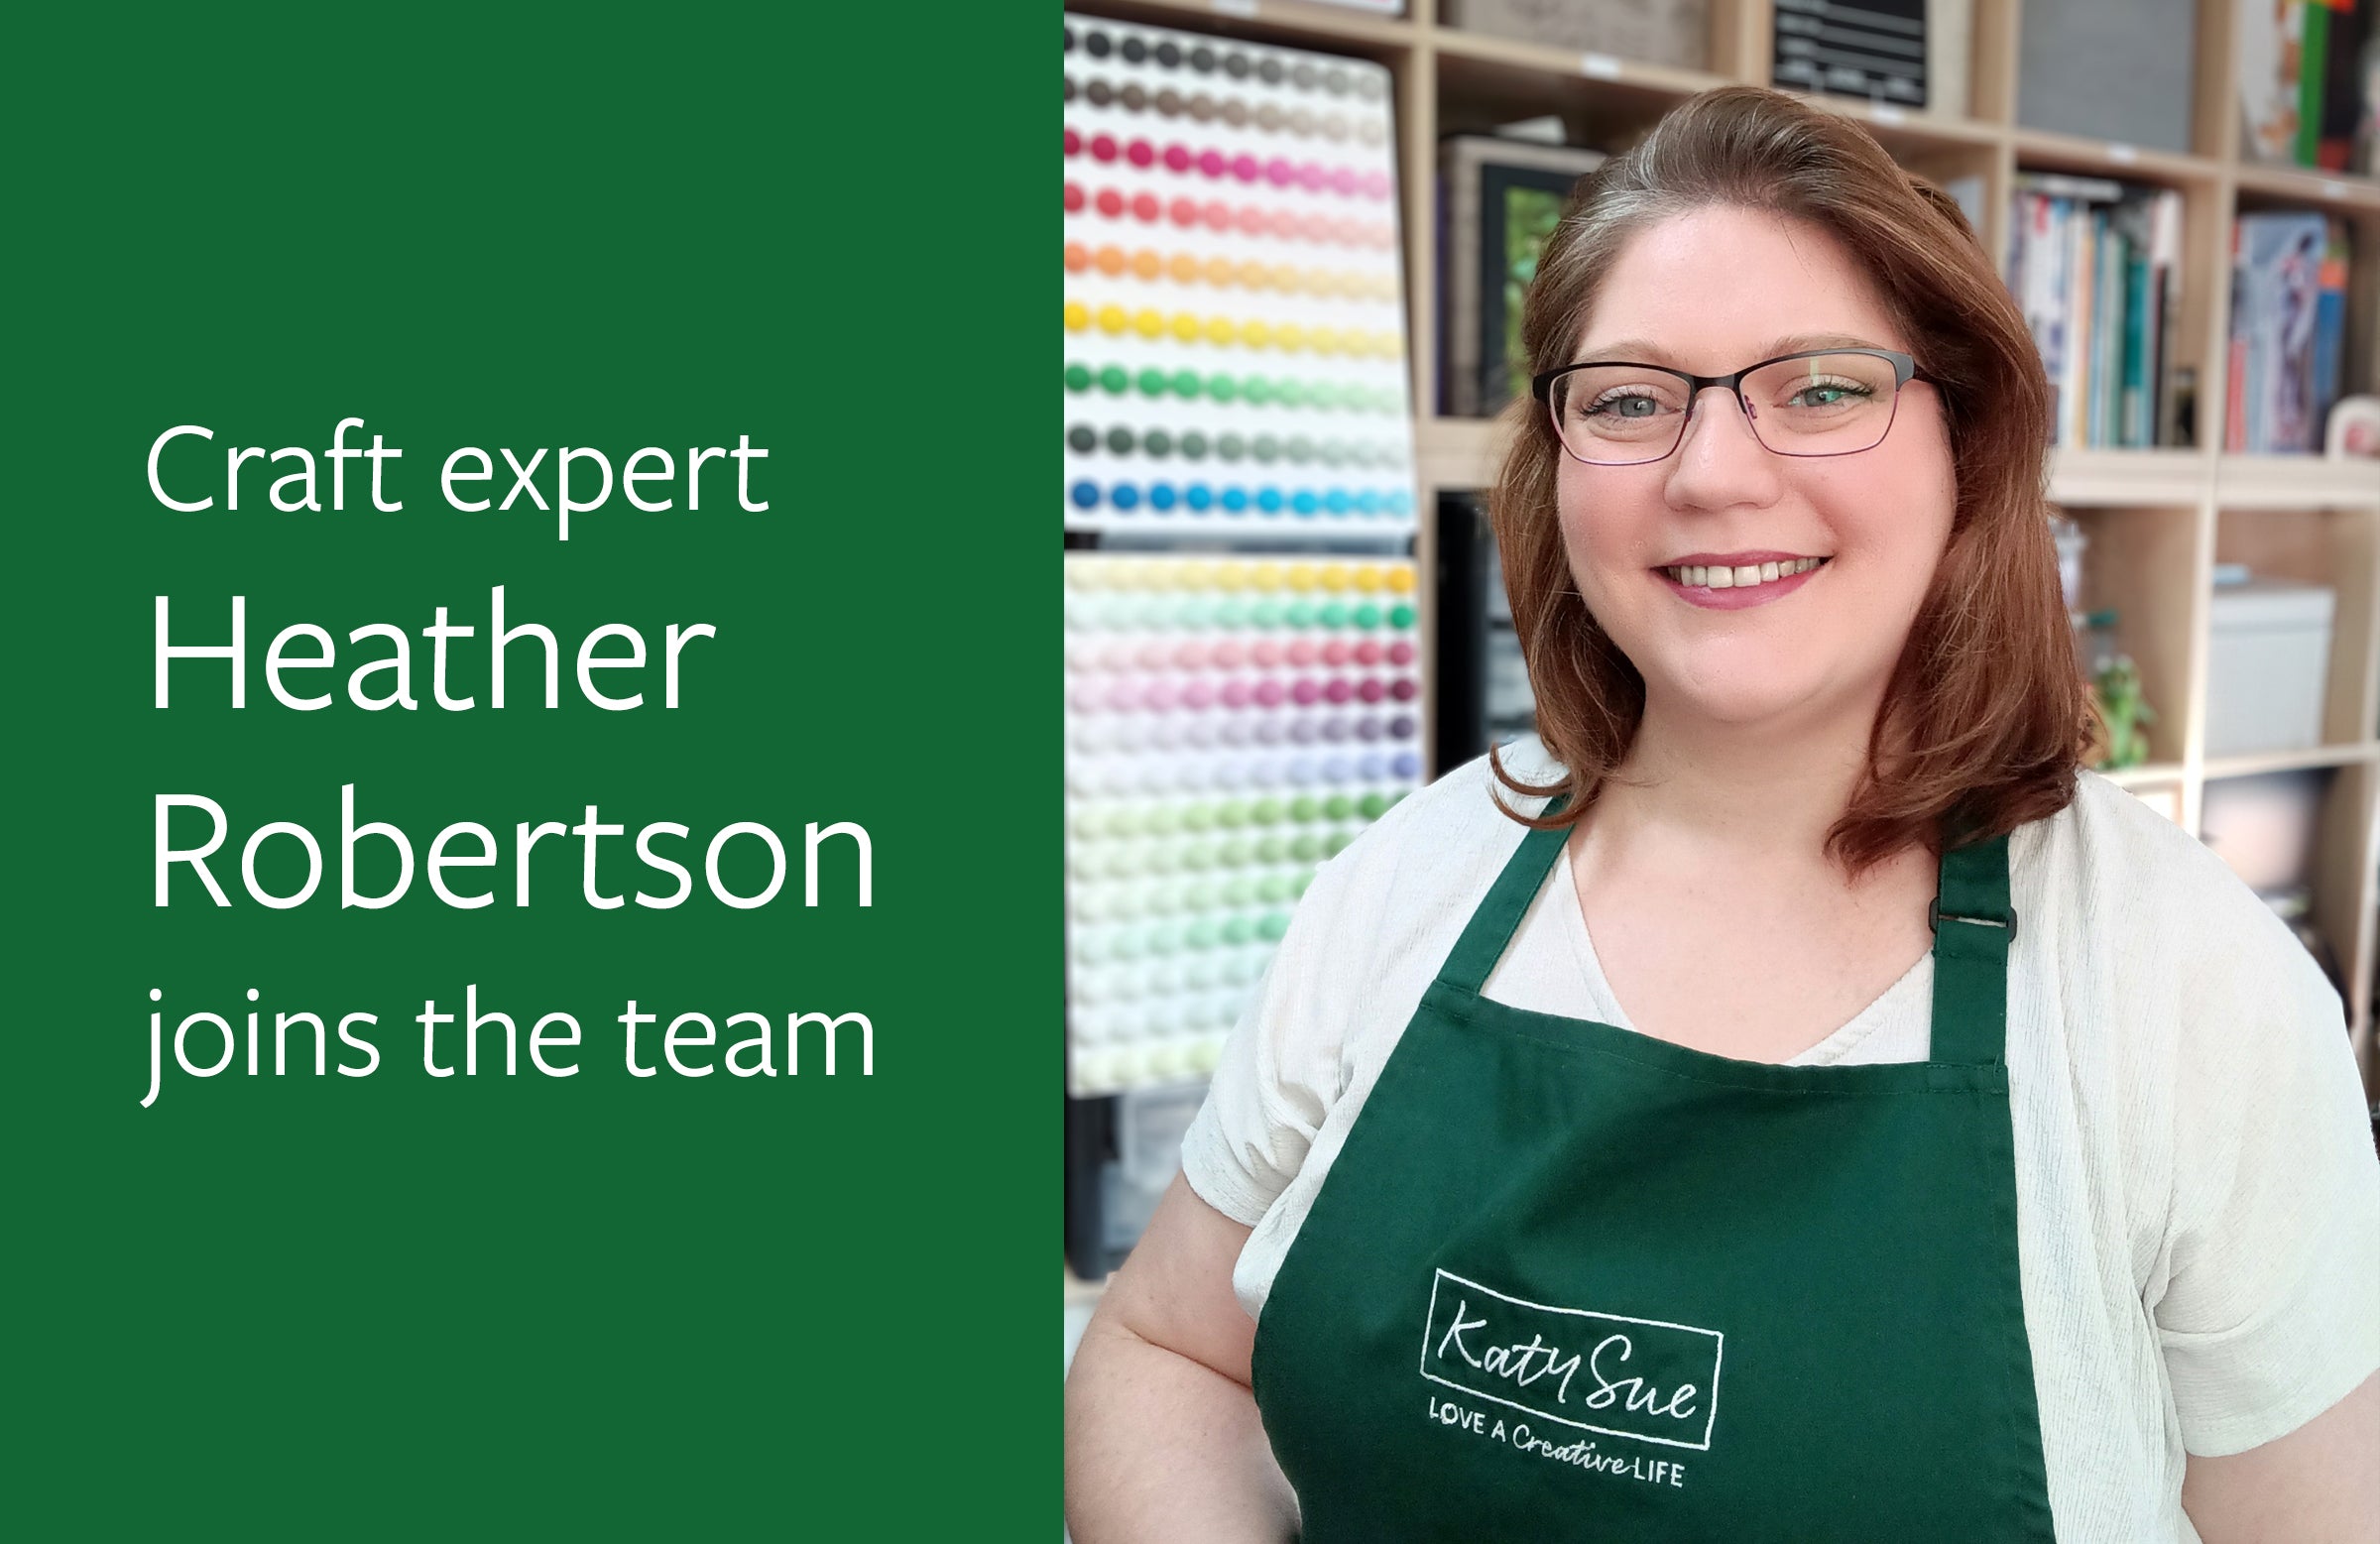 Meet Heather Robertson, our Craft Expert and Community Associate